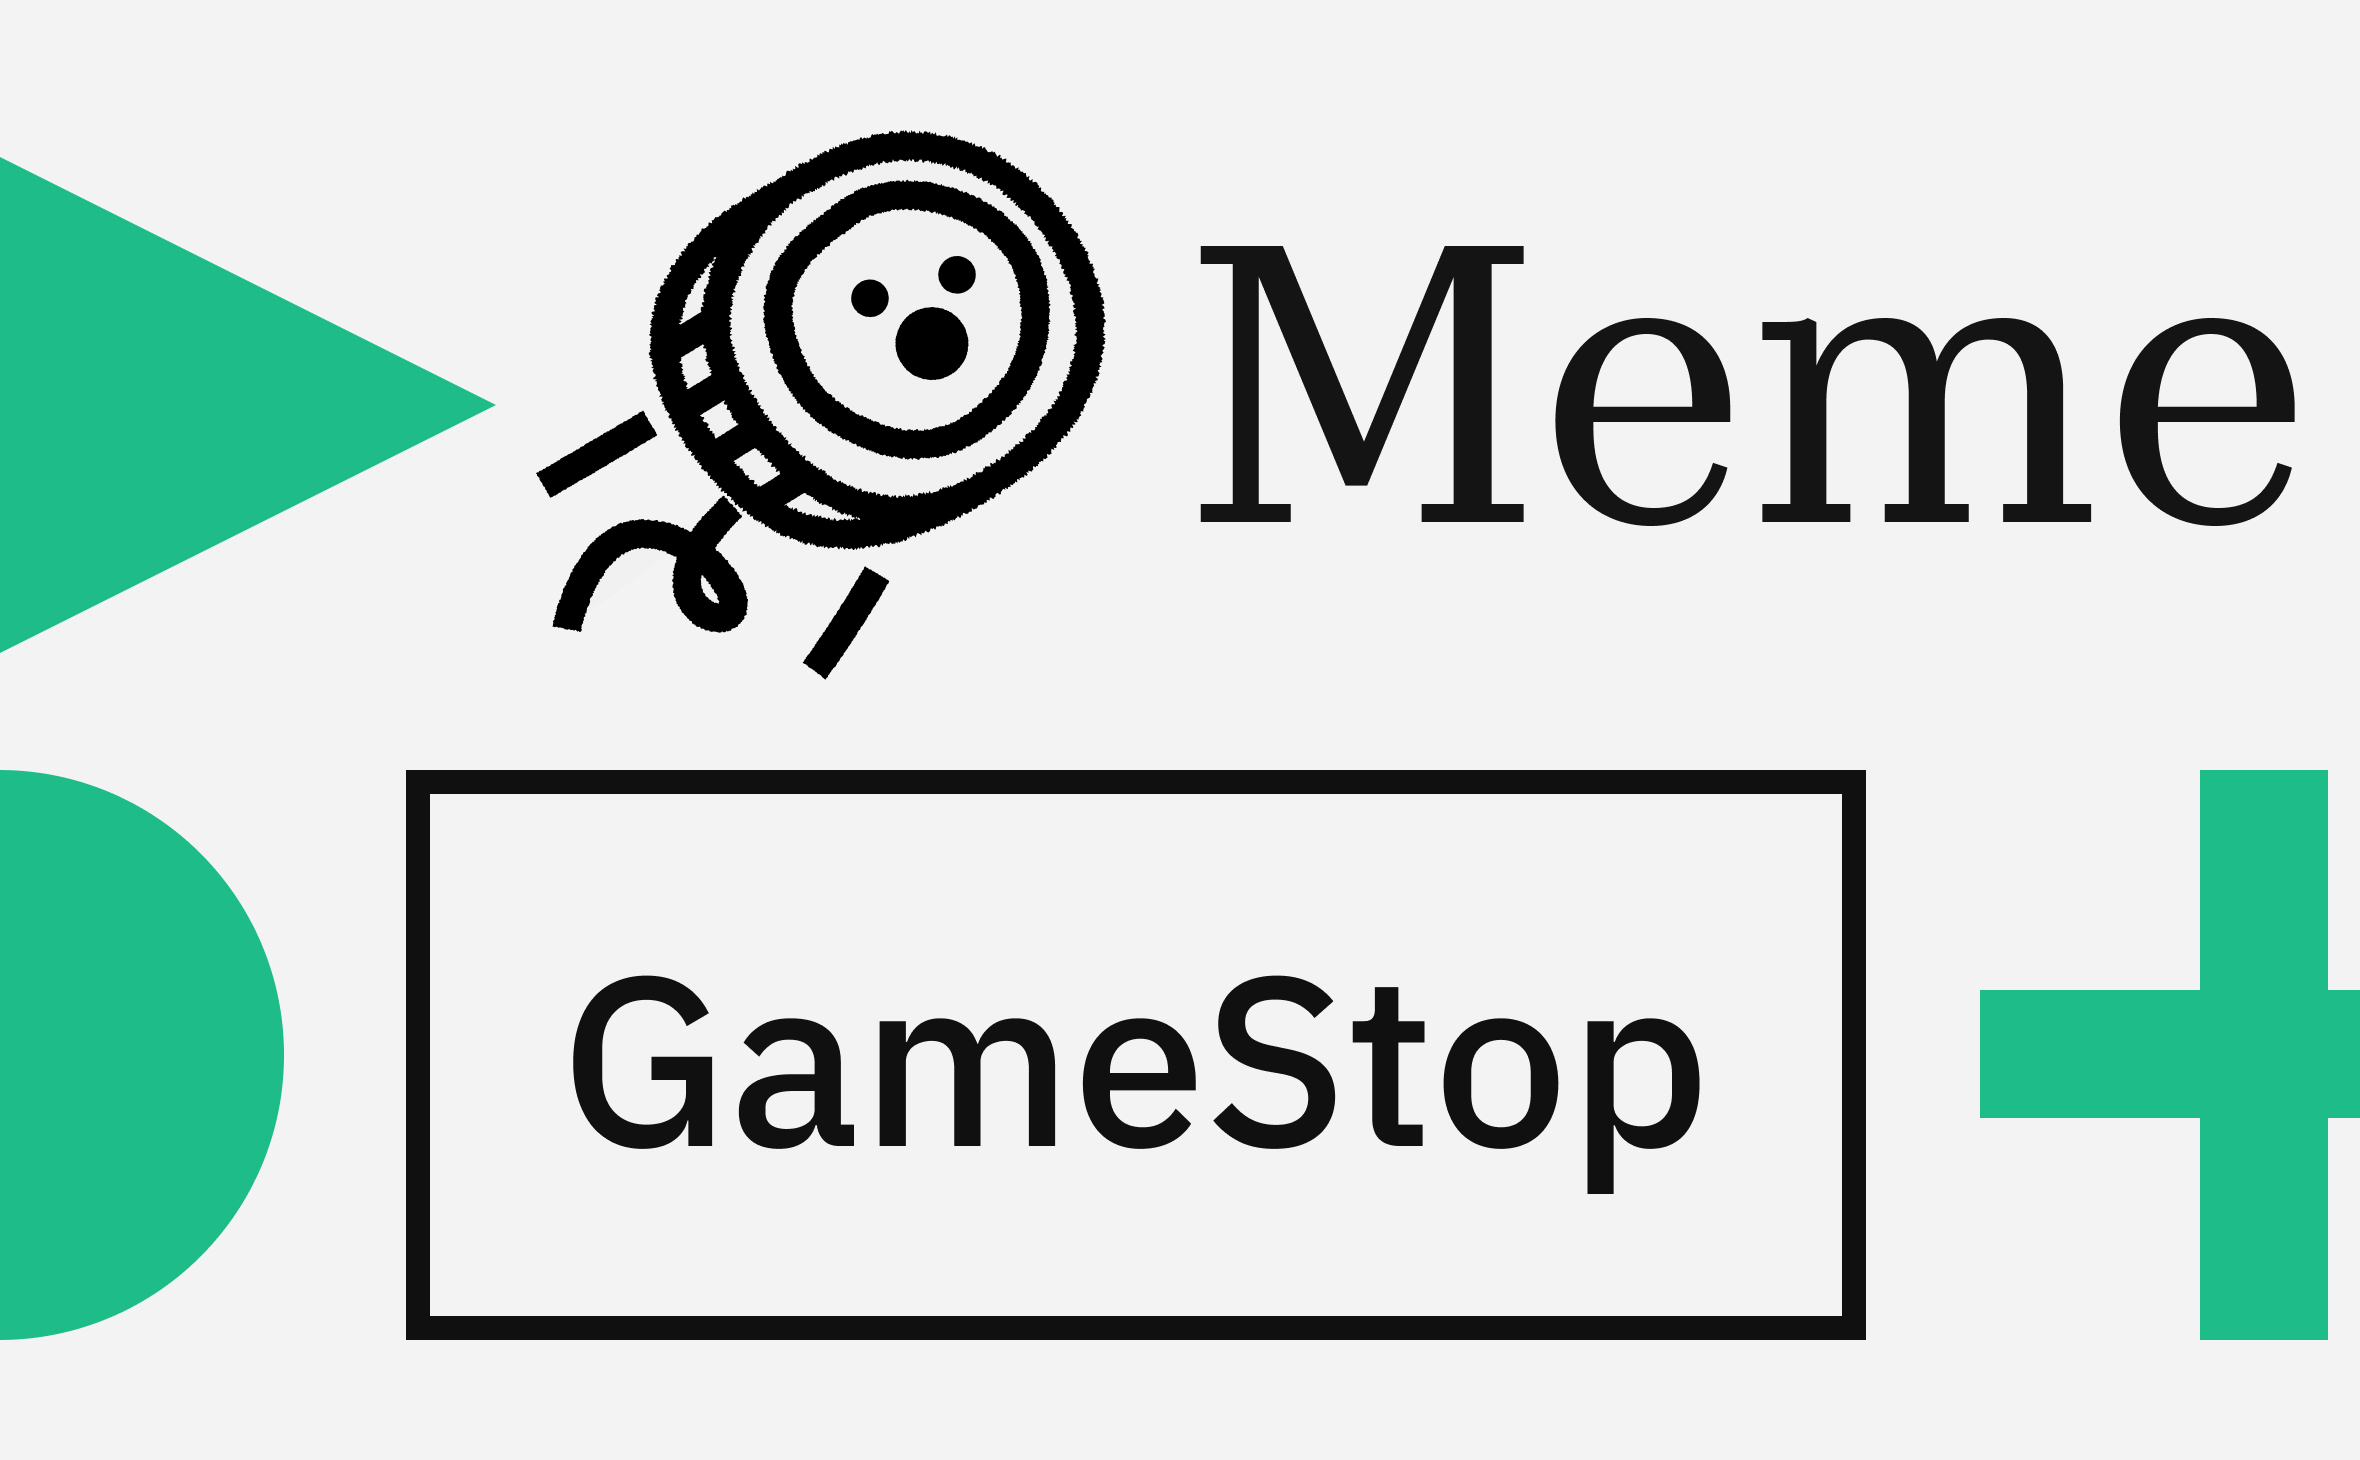 Названный в честь акций GameStop мемкоин взлетел в цене на 200%